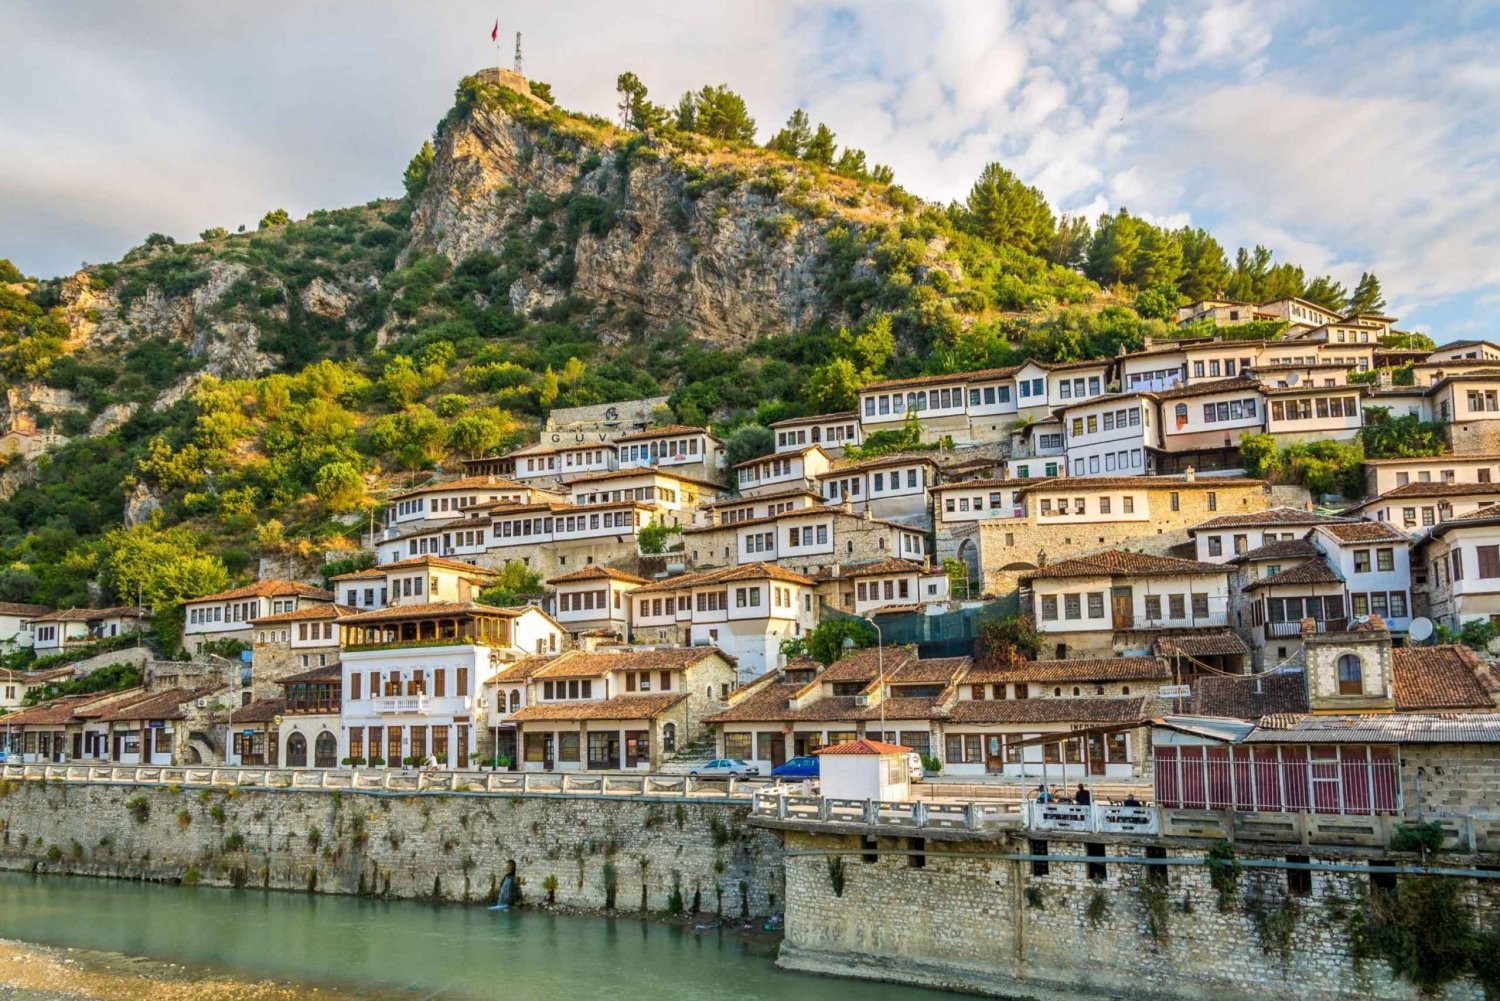 Berat : Day trip to Berat from Tirana